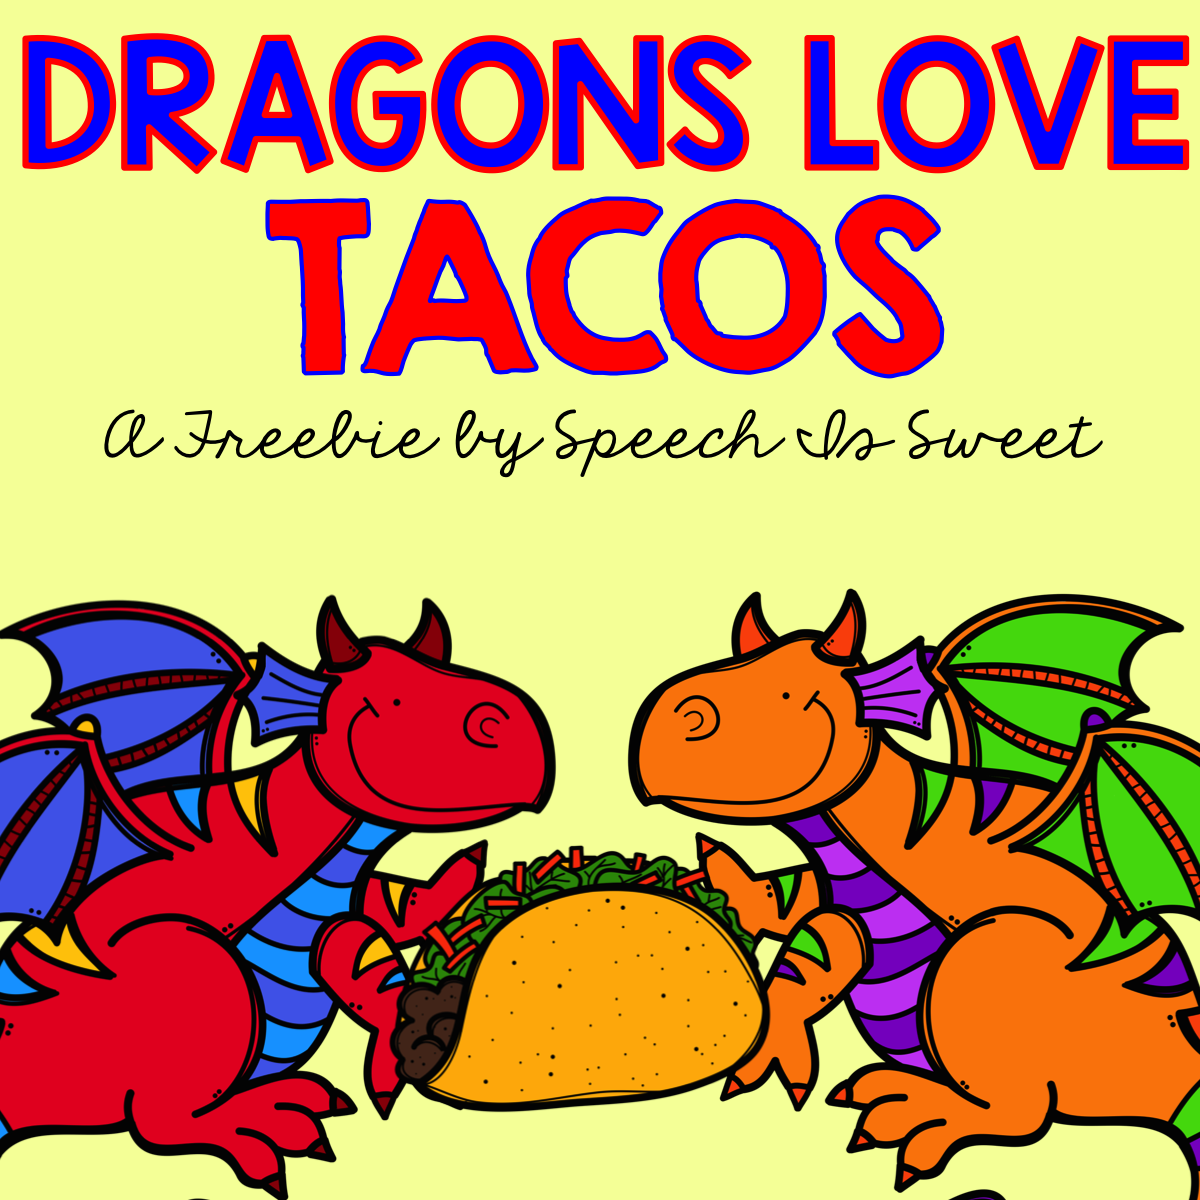 Dragons Love Tacos Plus Freebie Speech Is Sweet